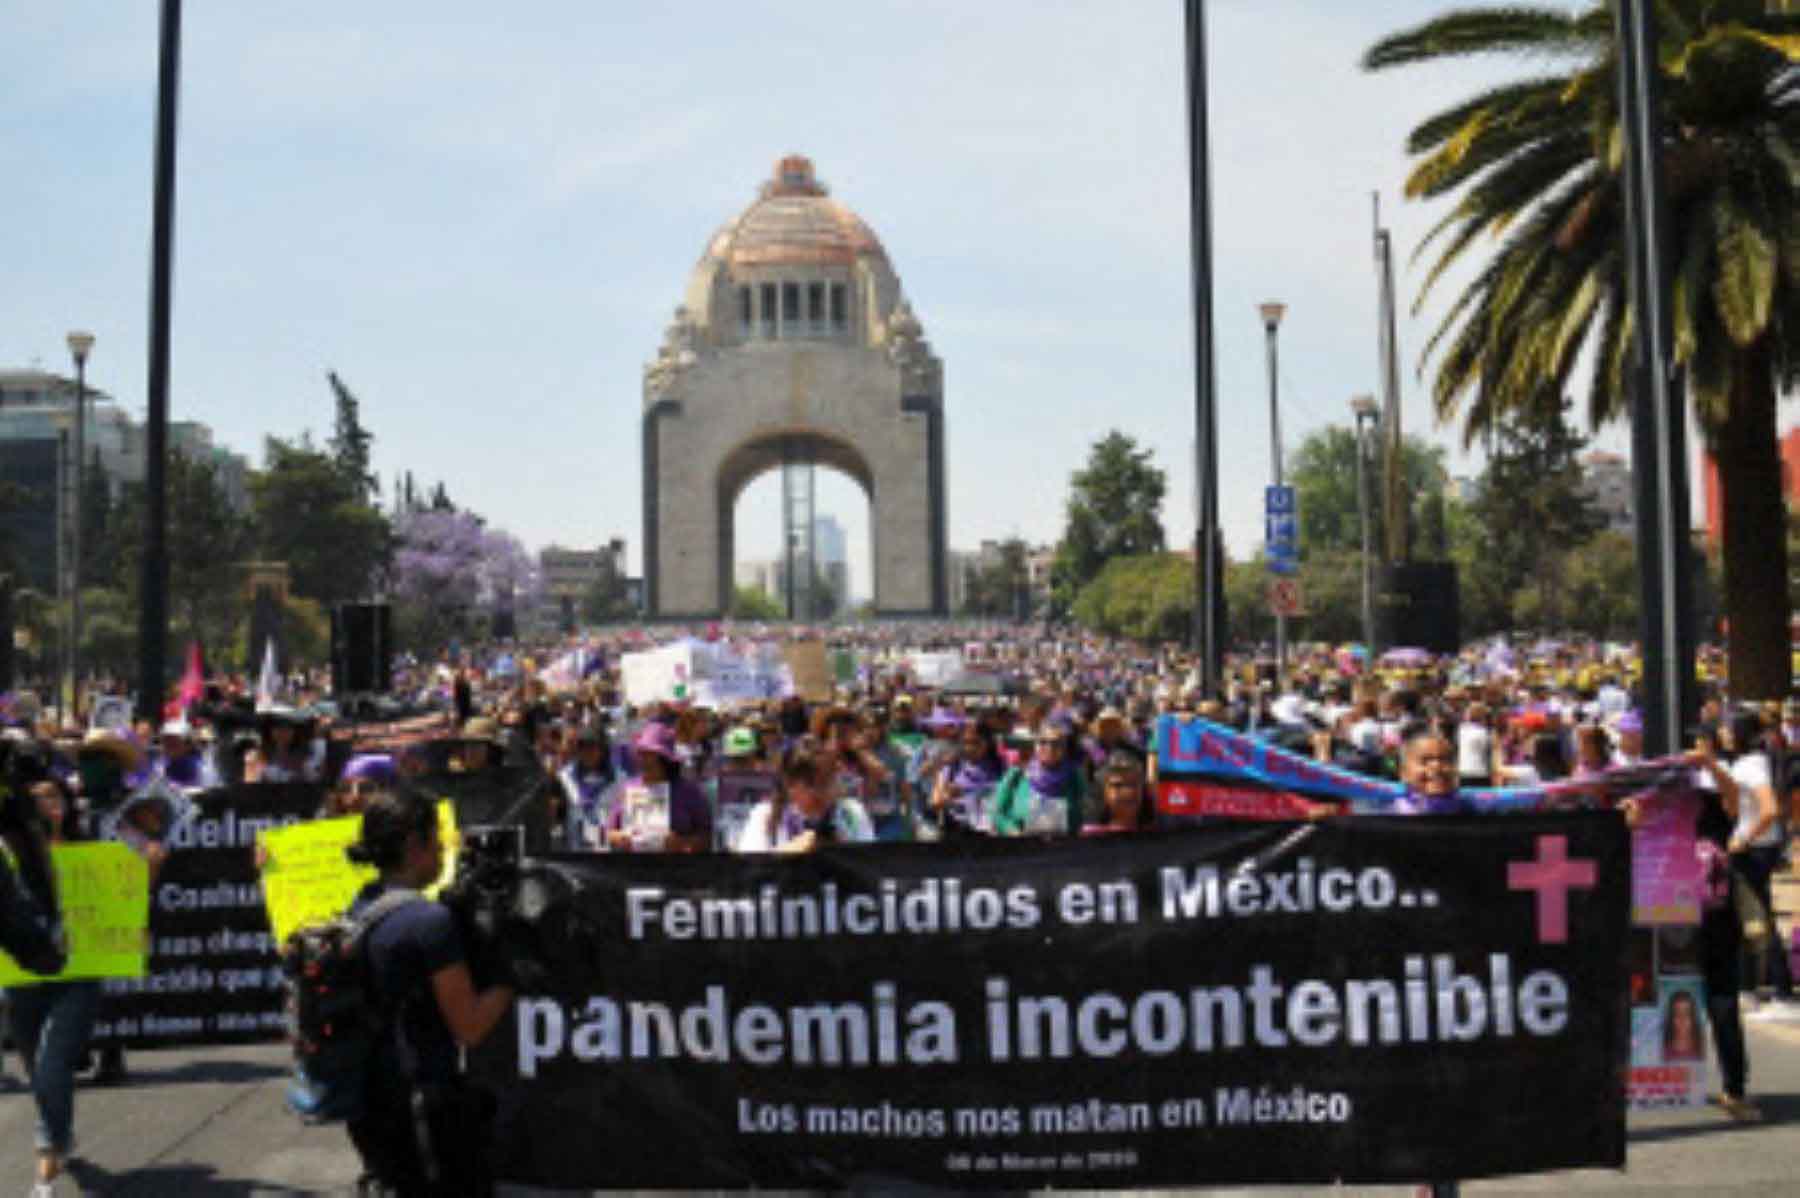 Miles de mujeres en México marchan contra los feminicidios: "¡ni una más!"